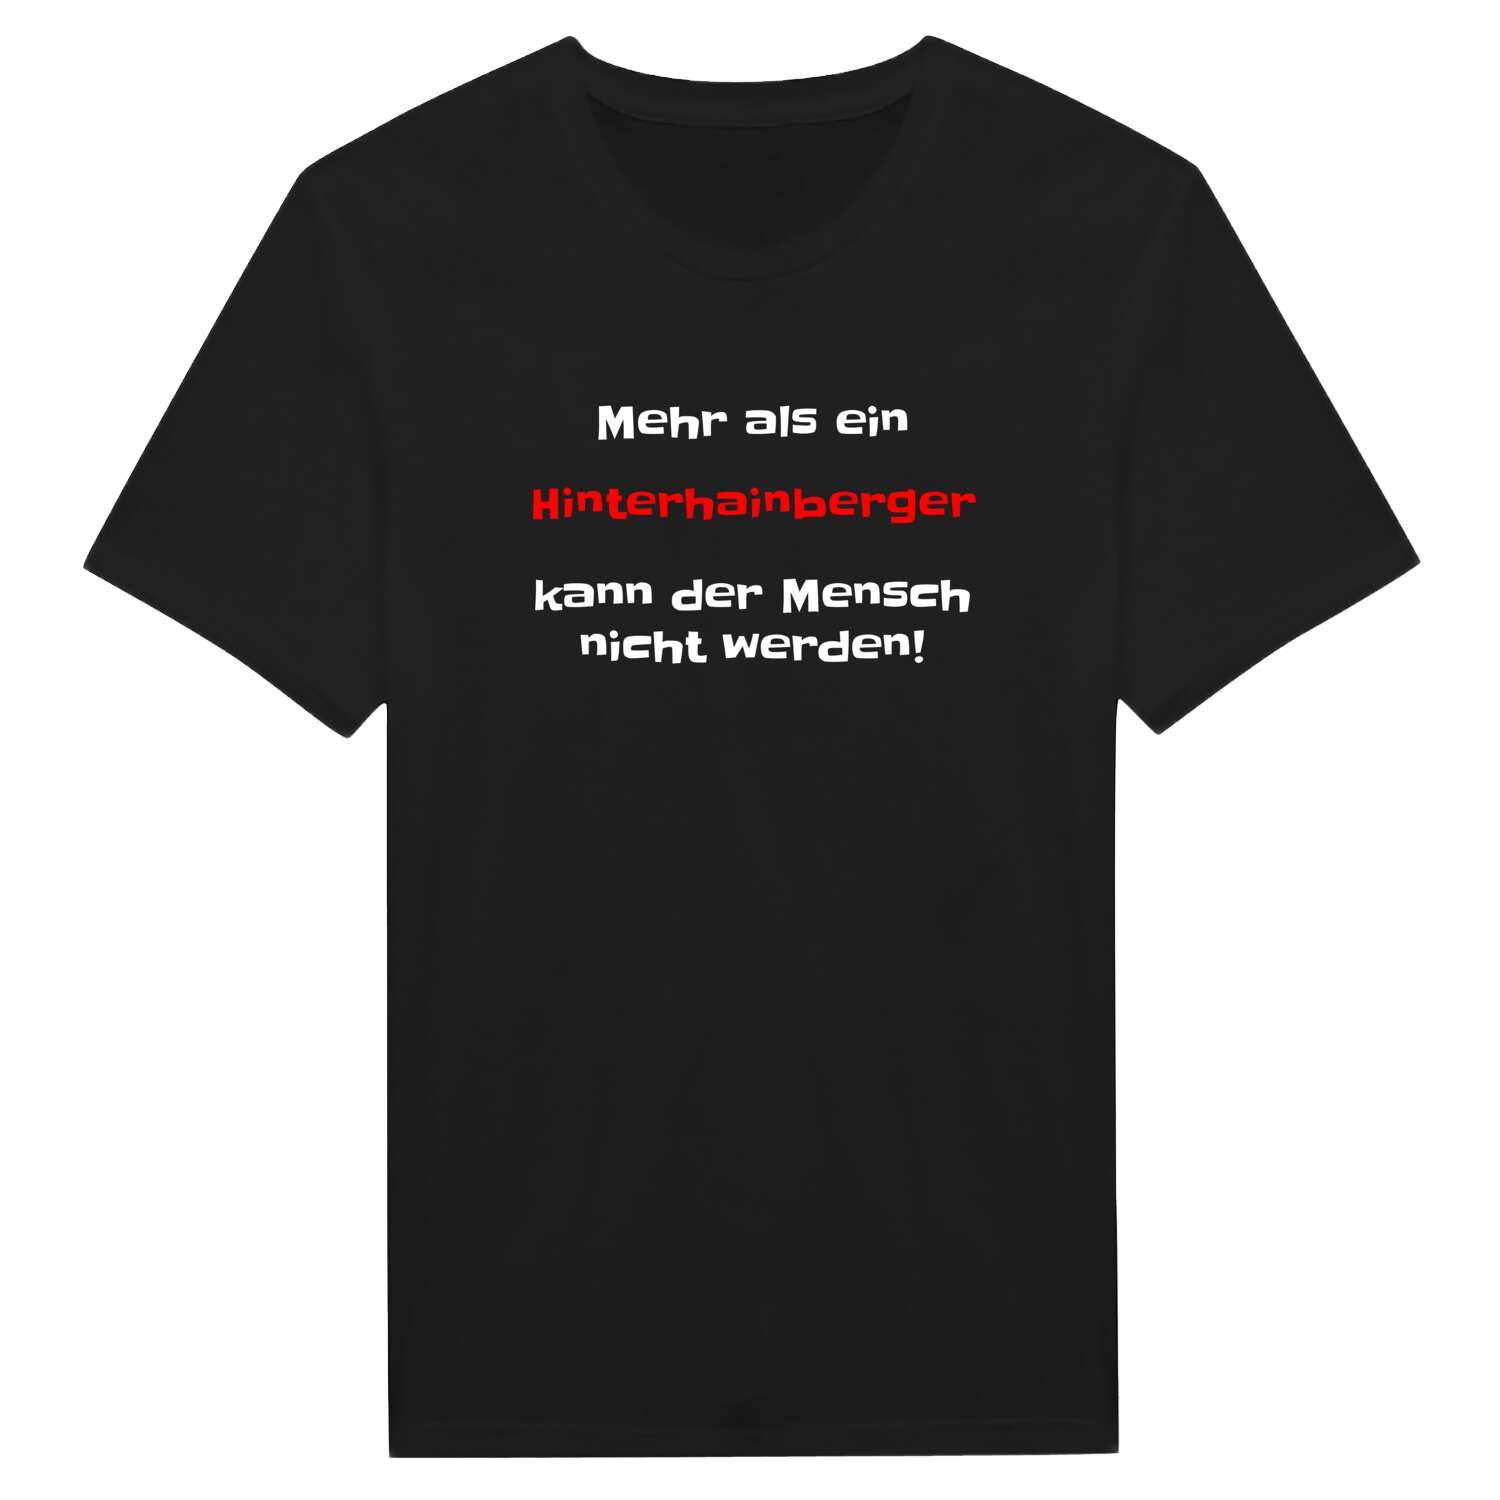 Hinterhainberg T-Shirt »Mehr als ein«